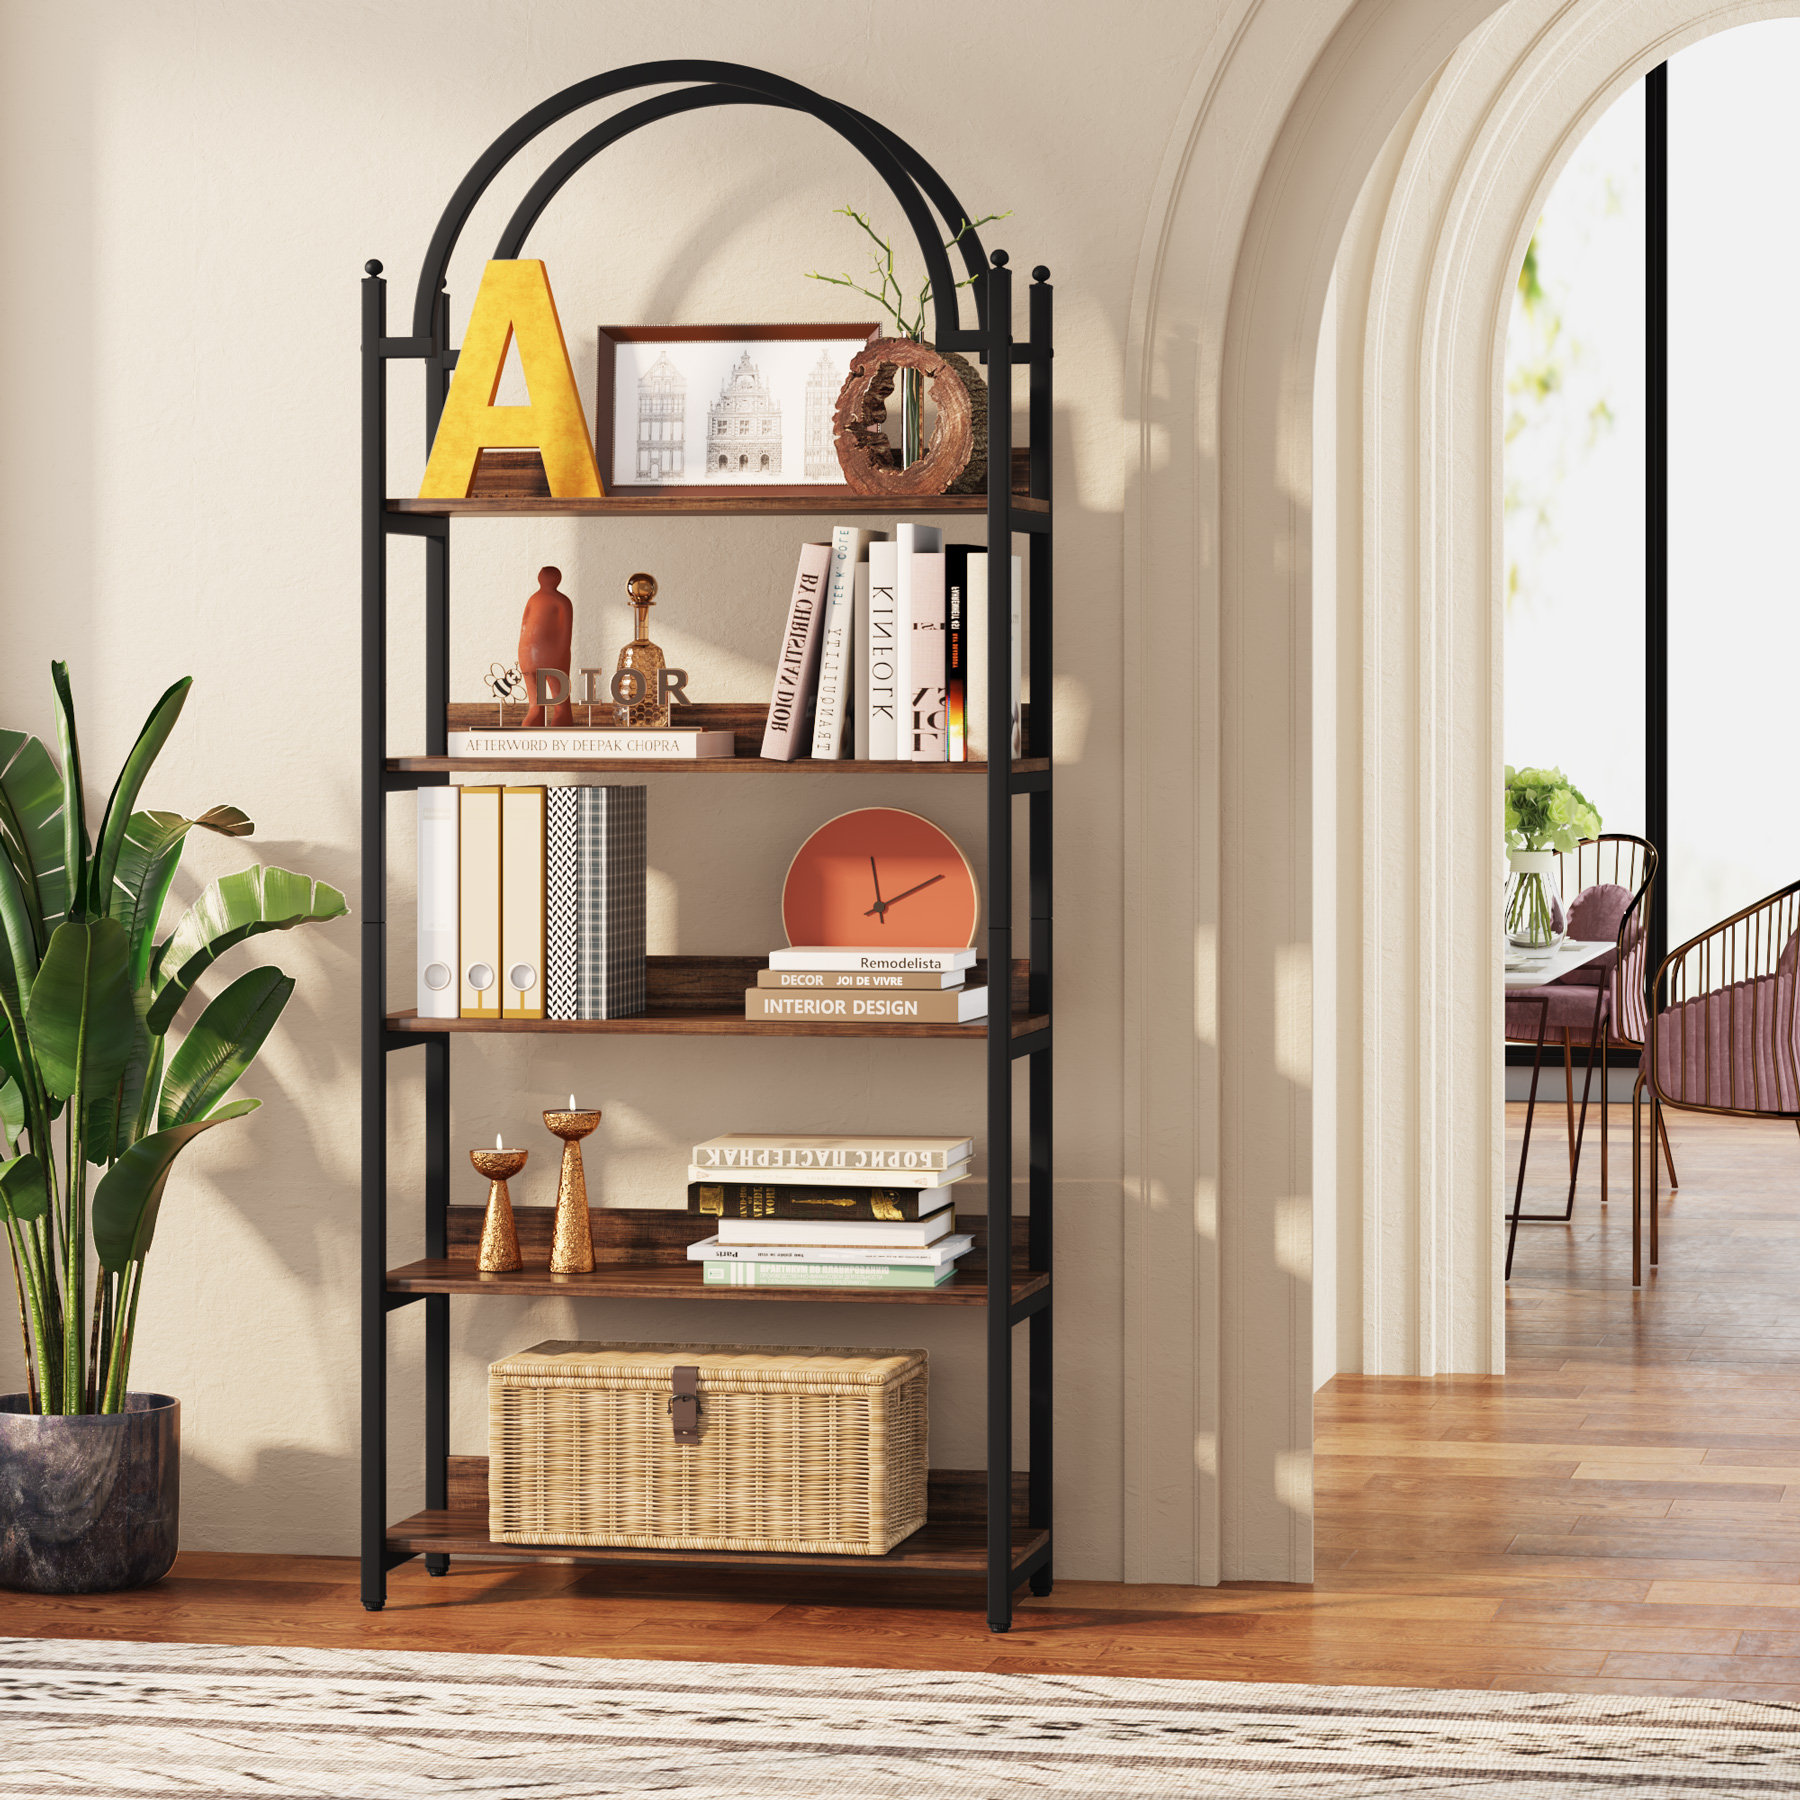 Oscer Bookshelf Industrial 5 Tier Etagere Bookcase Bookshelves for Living  Room, Bedroom